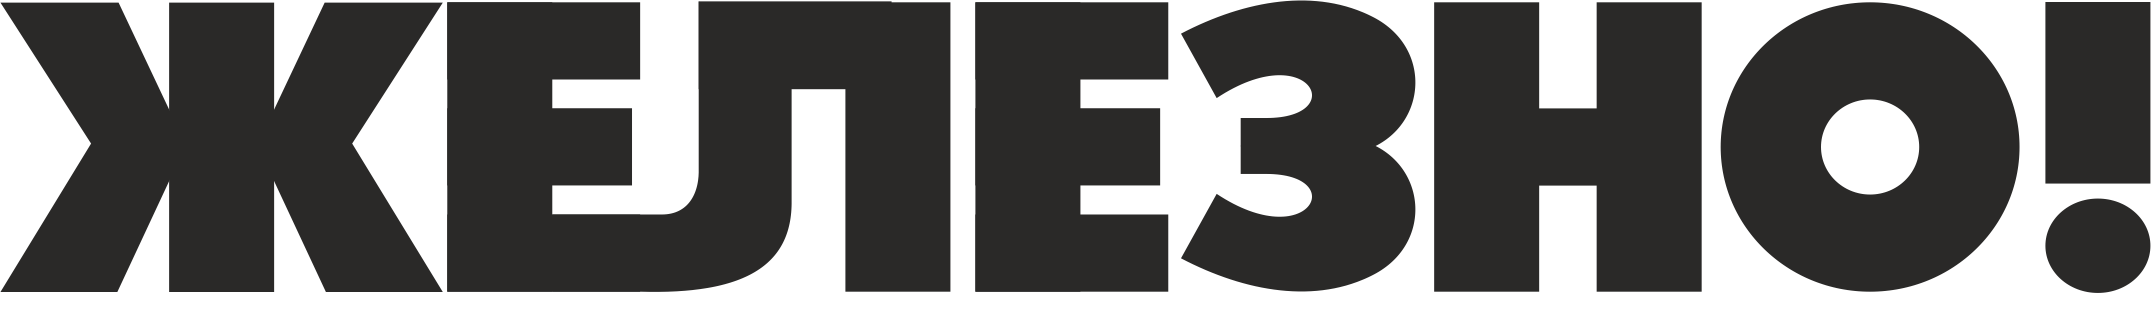 Логотип Образовательно-профориентационный центр "Выставка "Железно!"